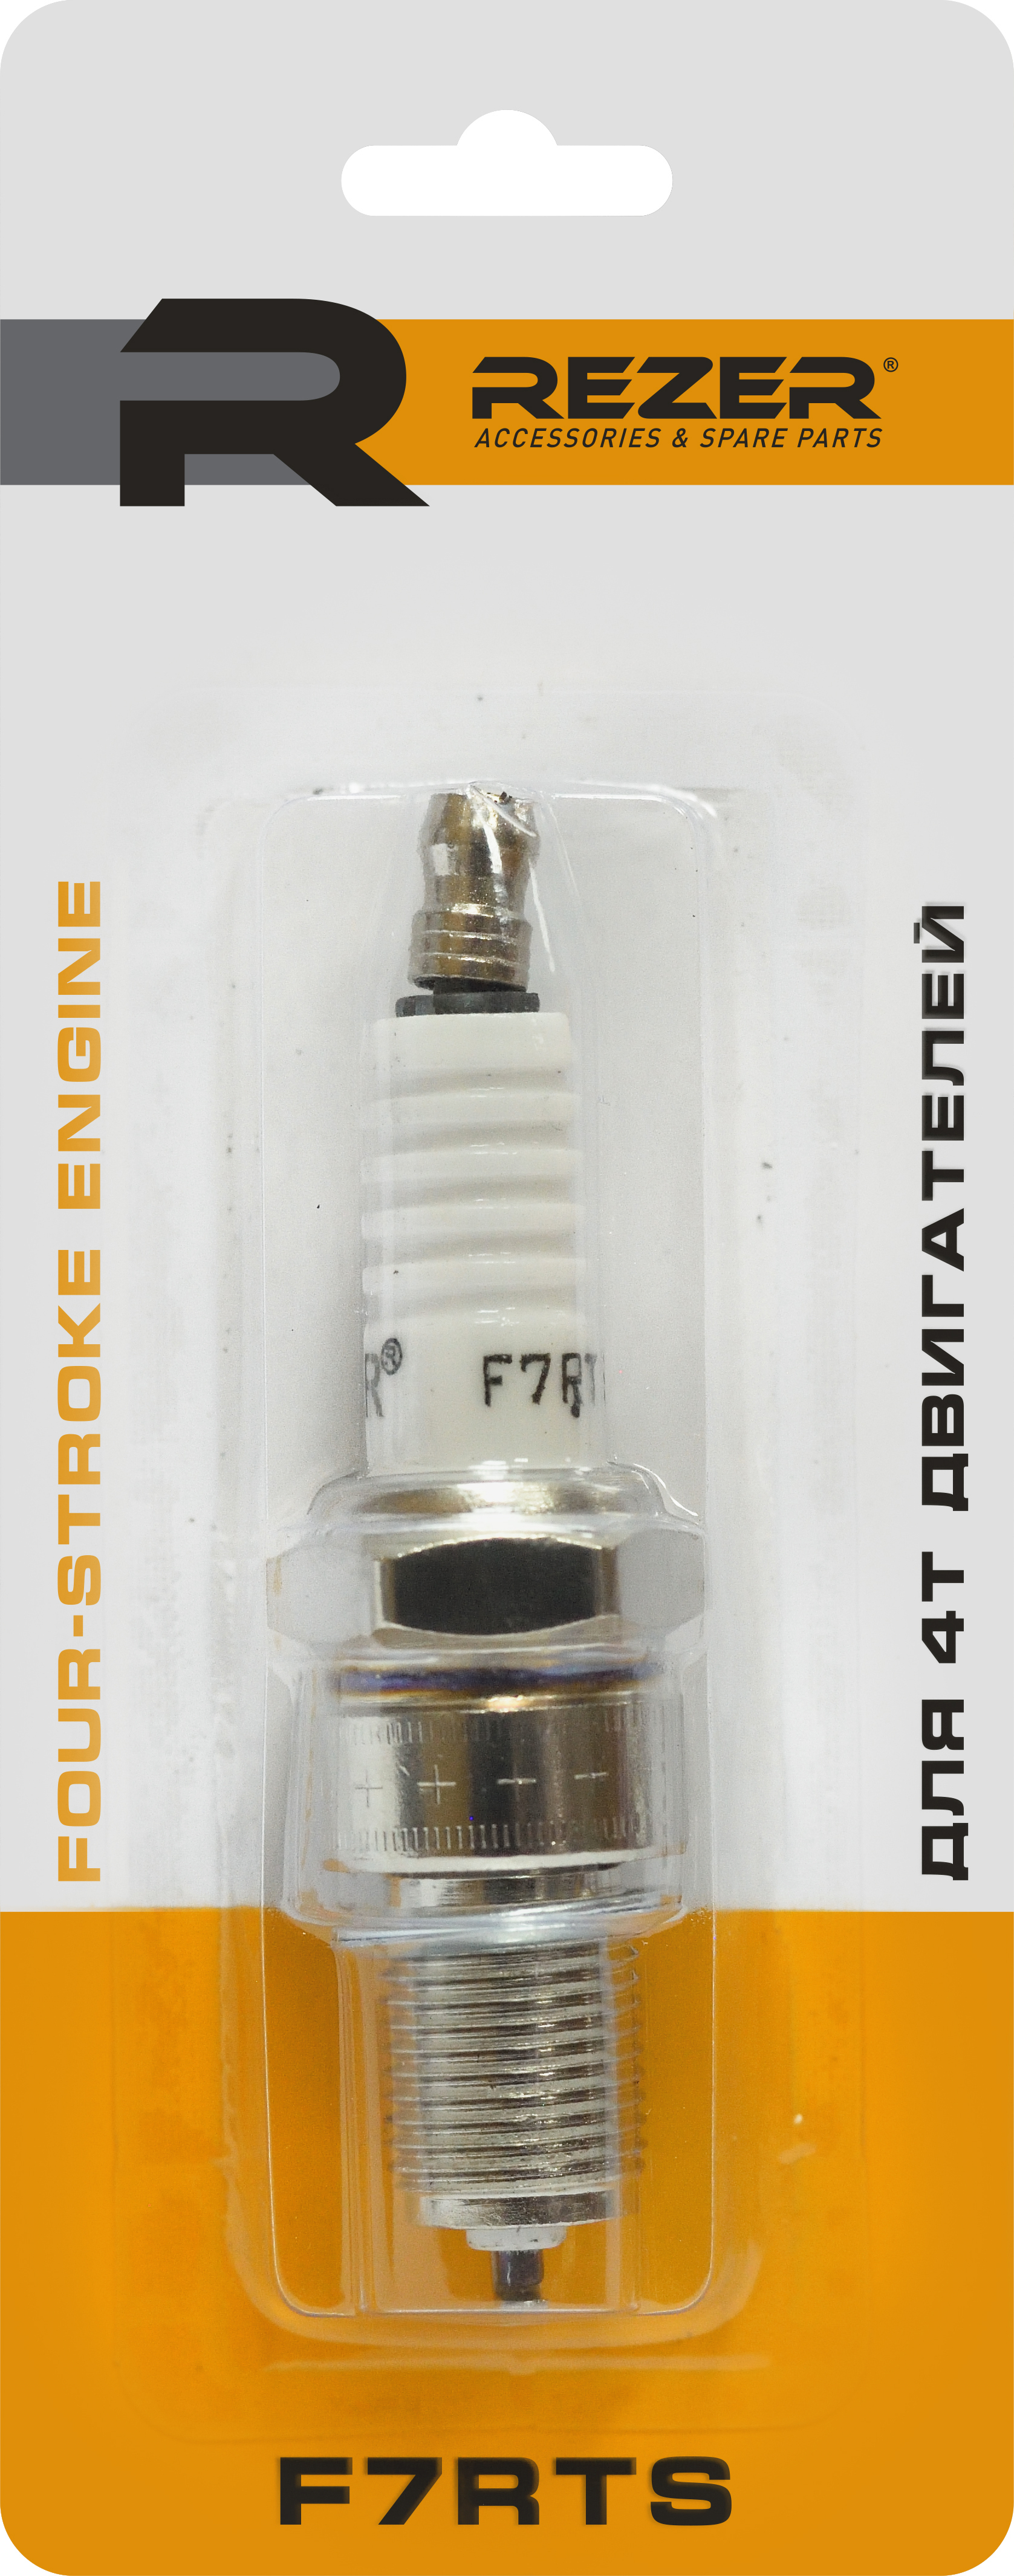 83413576 Свеча зажигания Rezer F7RTS для 4-тактных двигателей STLM-0041219 Santreyd